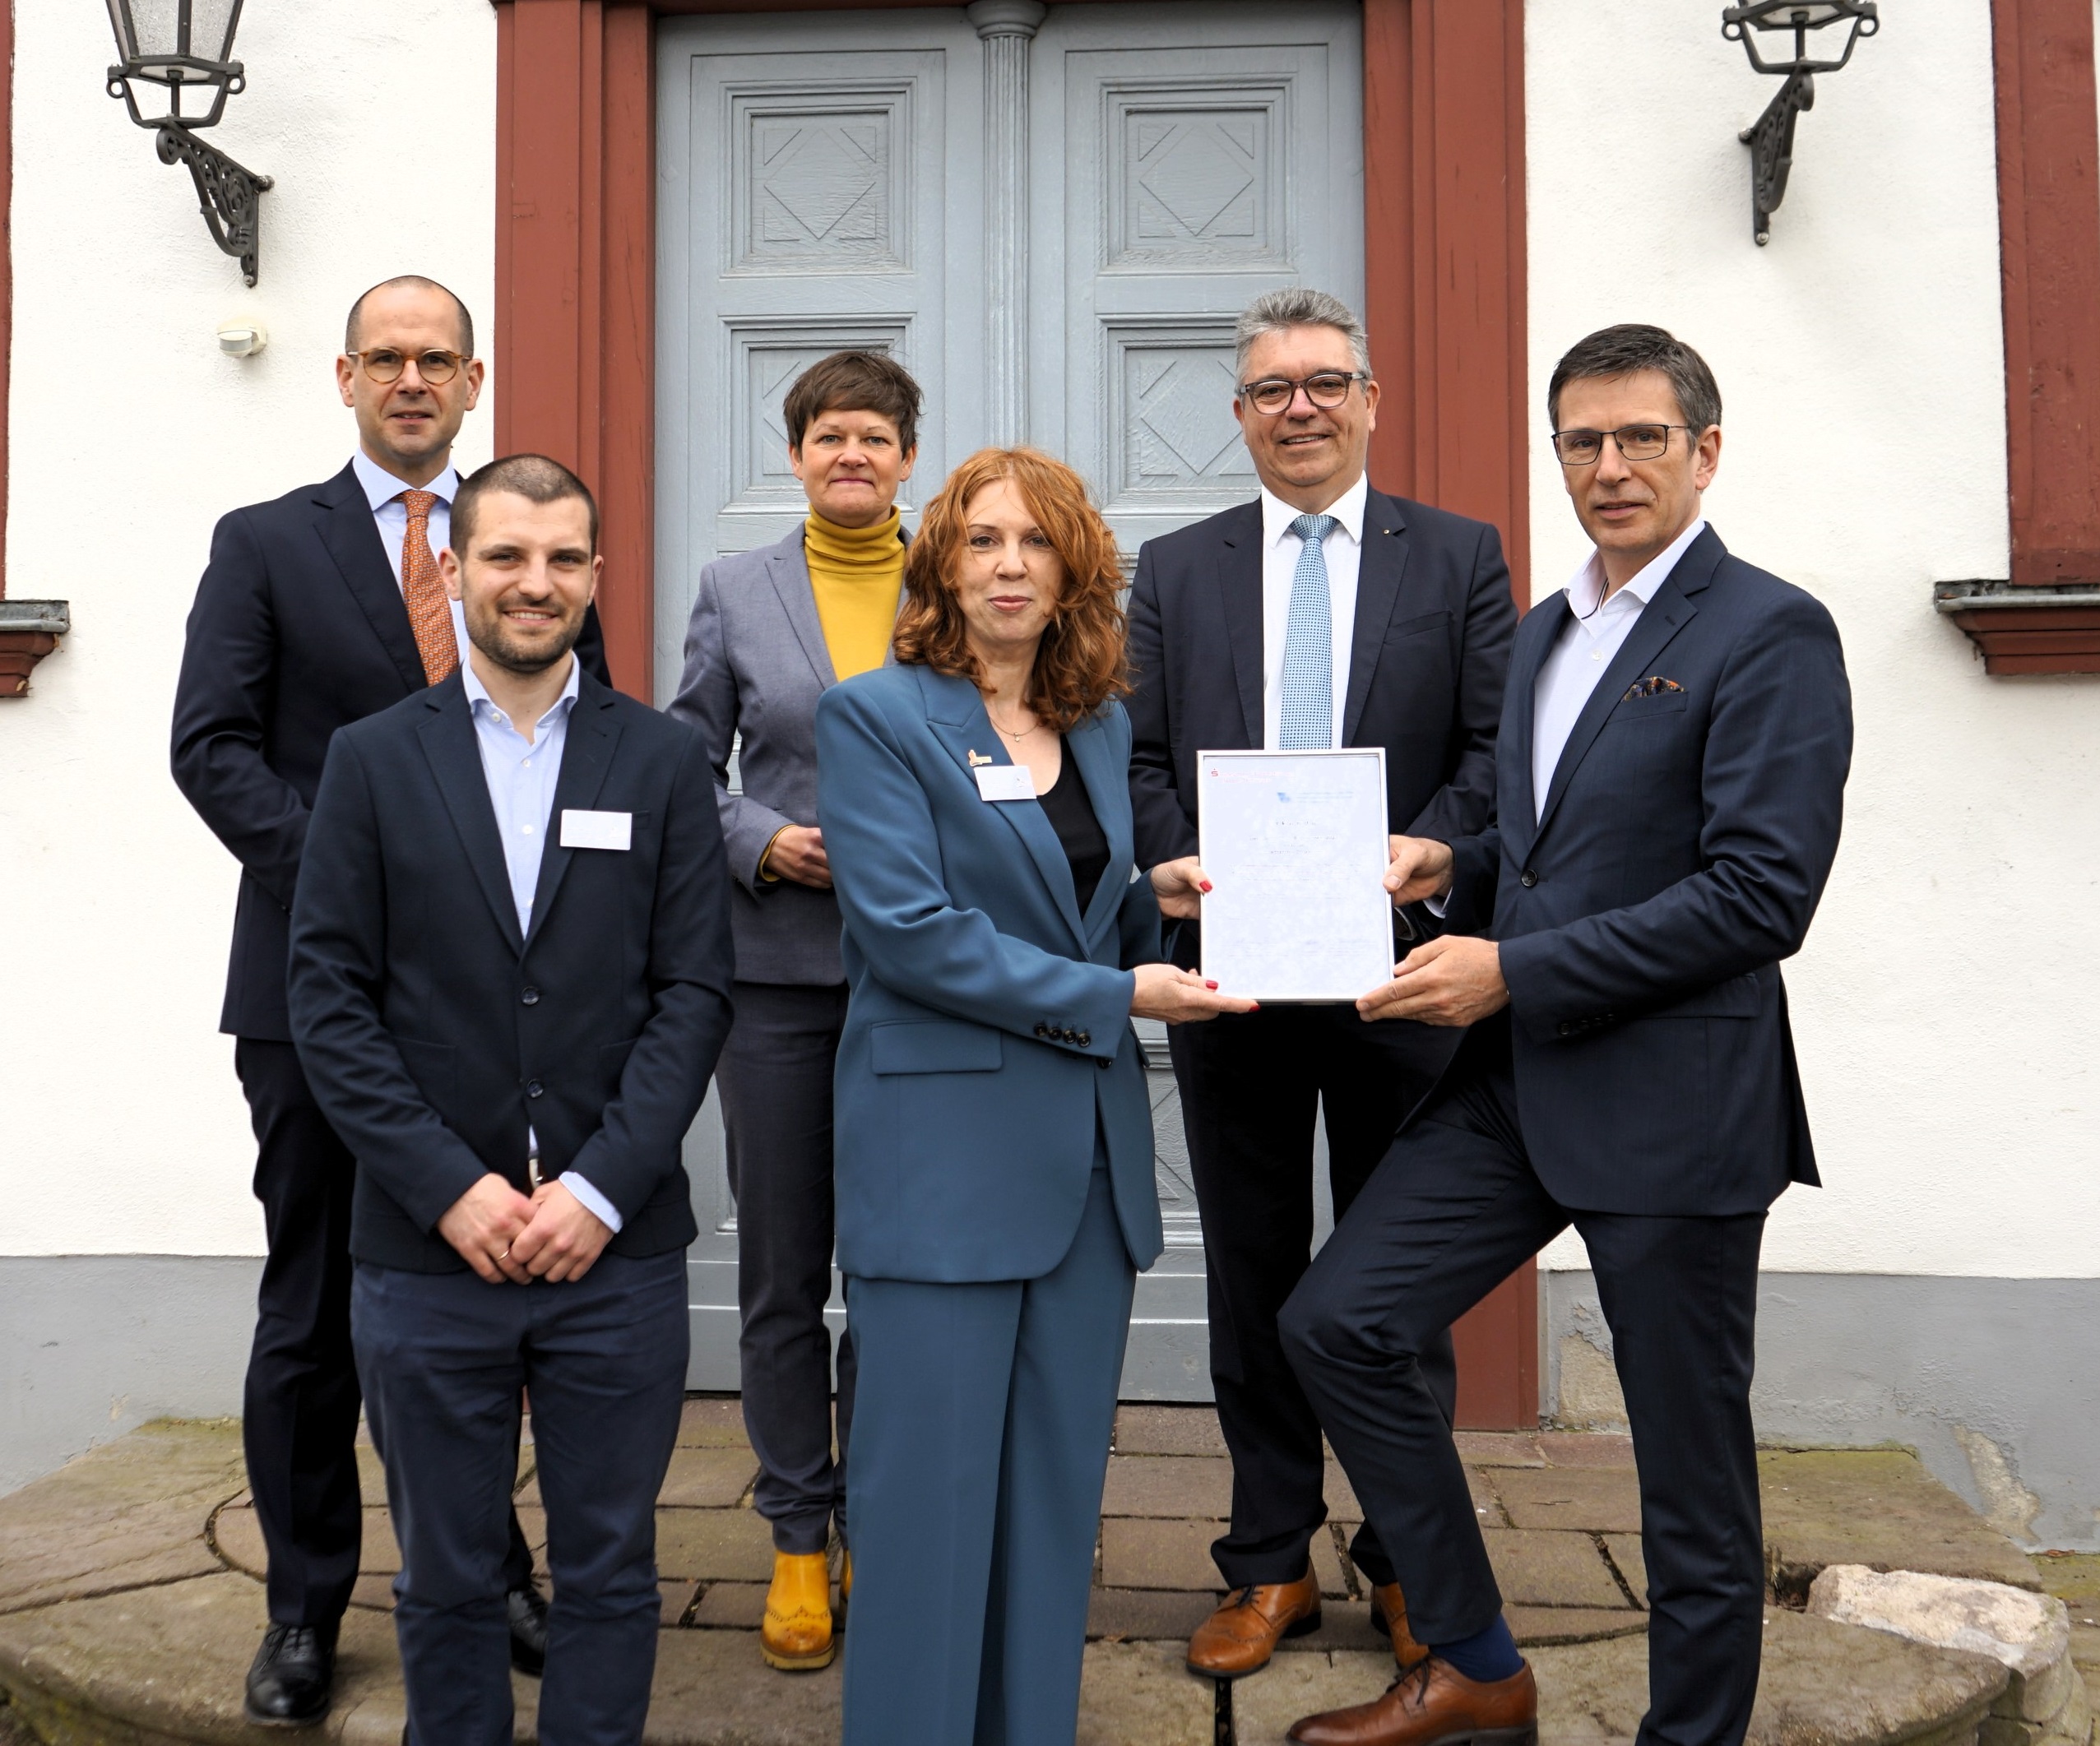 Verleihung des hessischen Archivpreises an die Oranienstadt Dillenburg. Mit Klick aufs Bild gehts zum ganzen Artikel